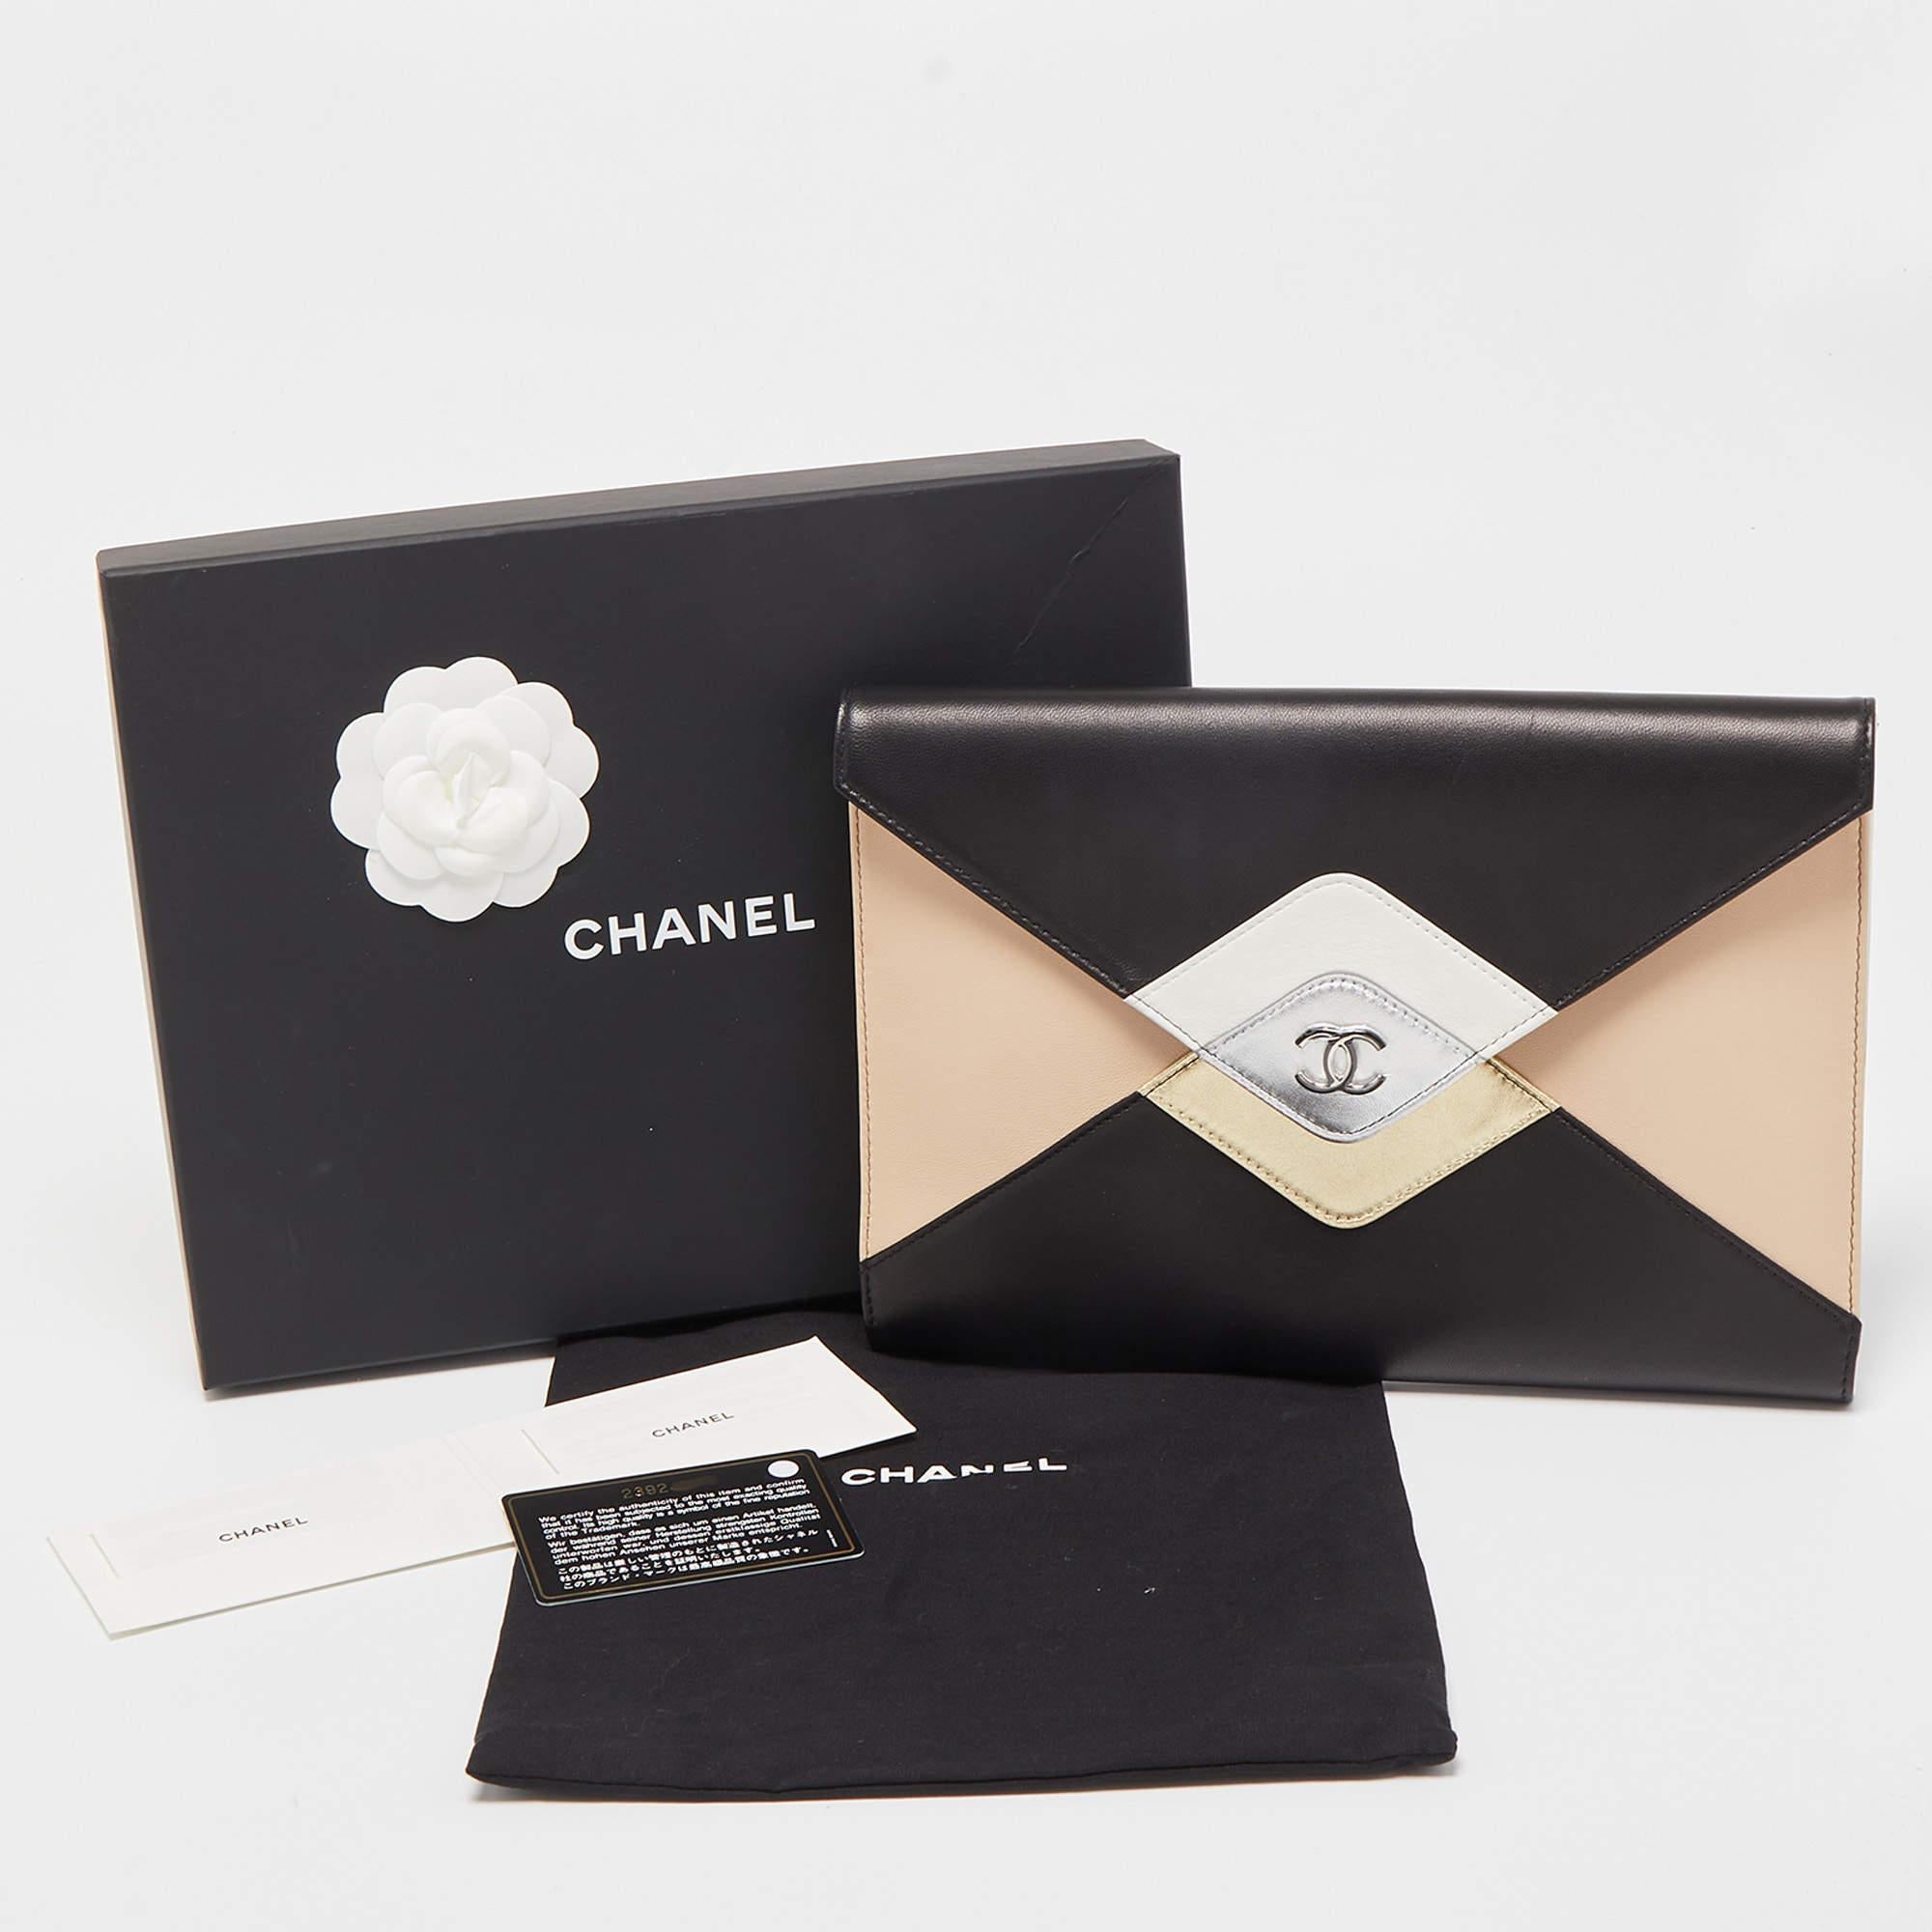 Die Chanel Clutch ist ein exquisites Accessoire. Sie ist aus hochwertigem Leder gefertigt und zeigt das kultige CC-Logo, das mit einem lebhaften mehrfarbigen Muster verziert ist. Mit ihrem schlanken, kompakten Design ist sie perfekt geeignet, um